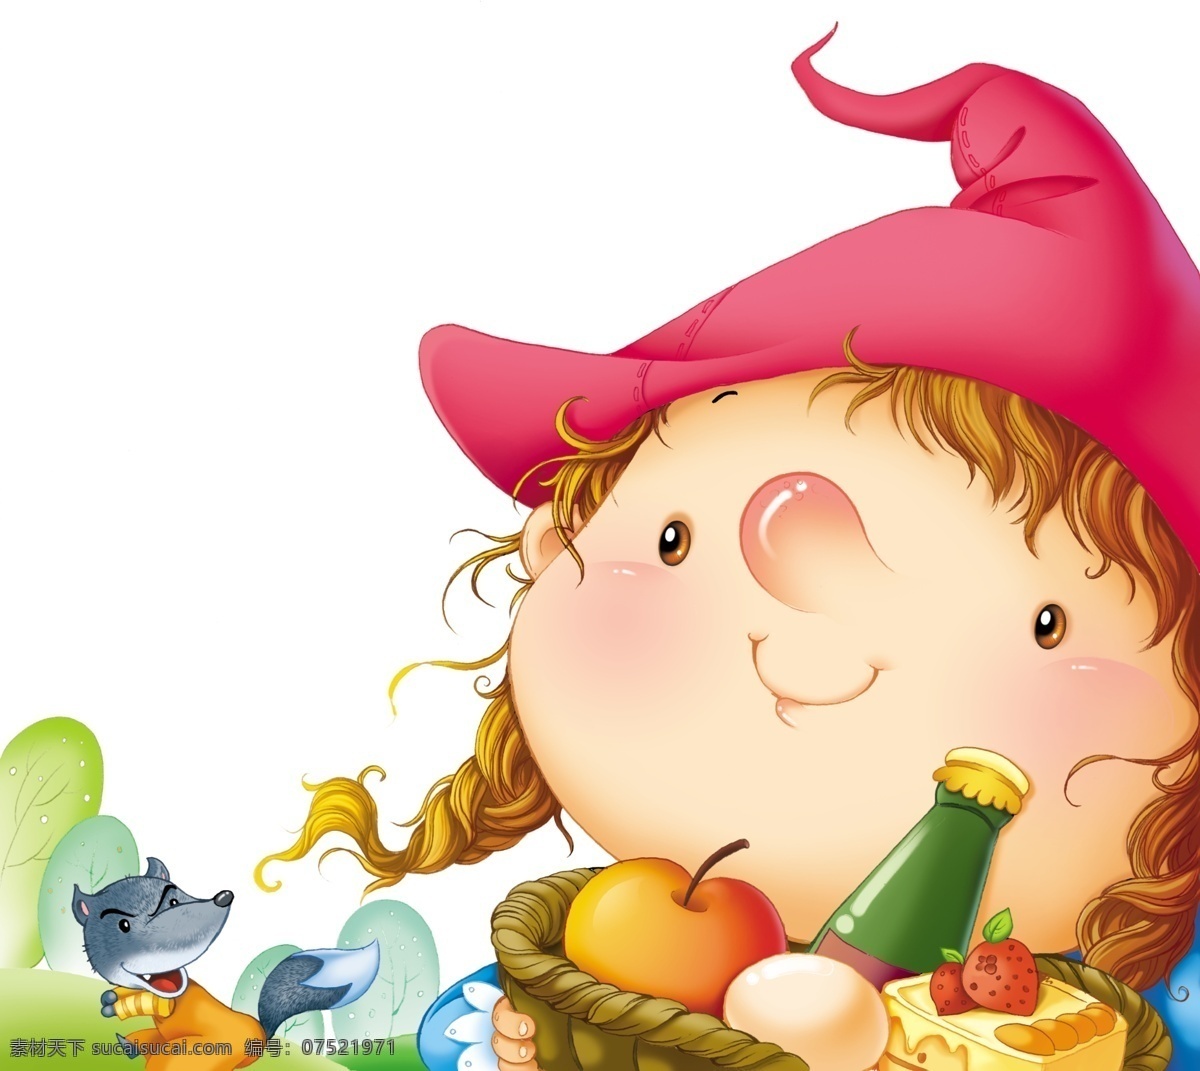 小红帽 可爱 卡通 女孩 红帽 篮子 大灰狼 食物 动漫人物 动漫动画